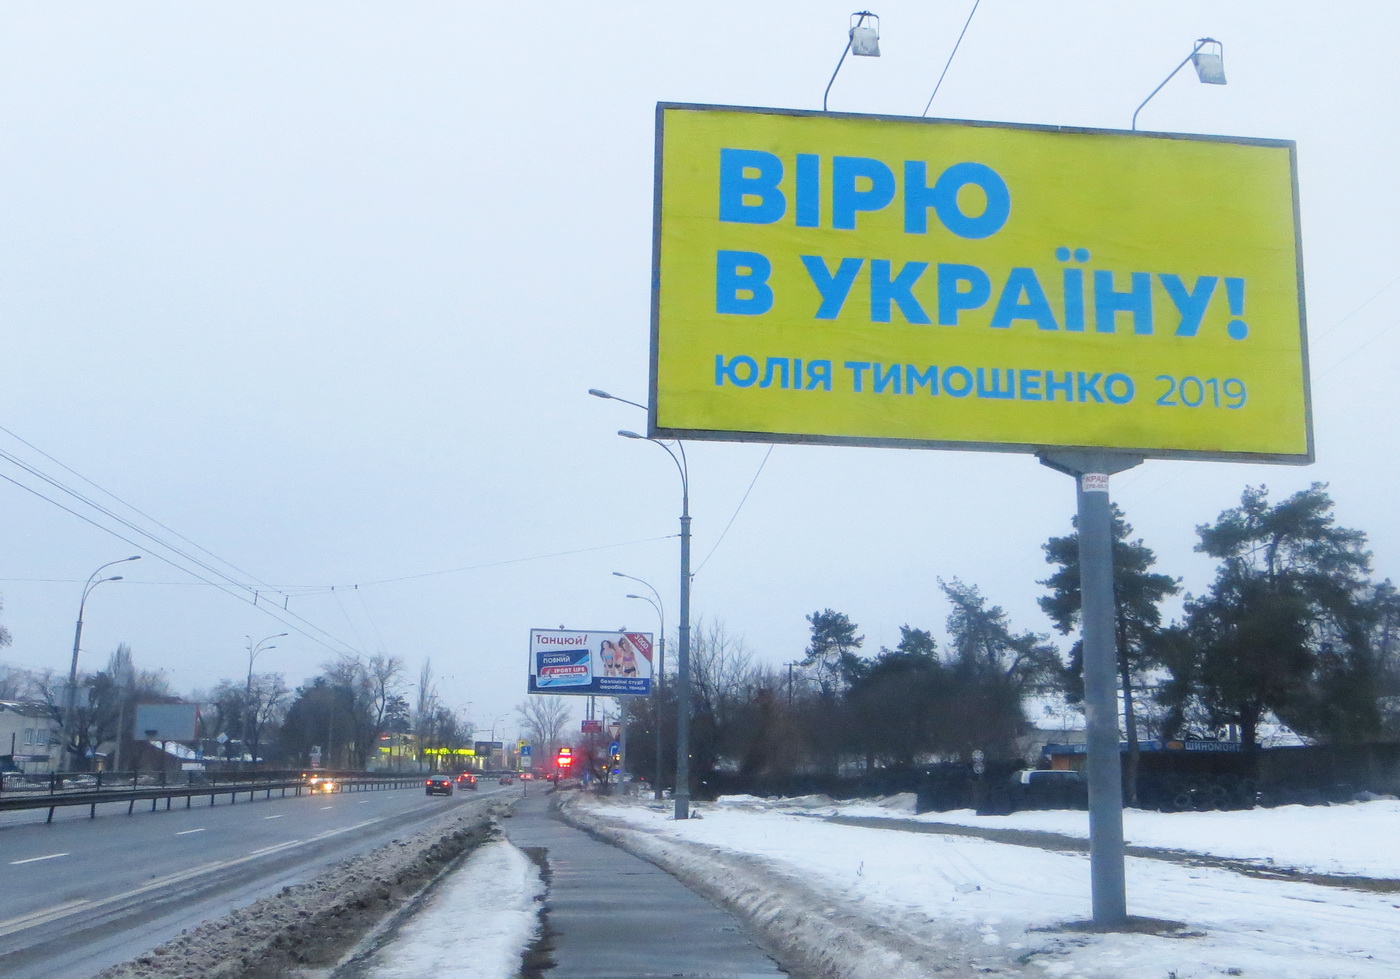 07 02 2019 Kyiv bilbordy tymoshenko perova1